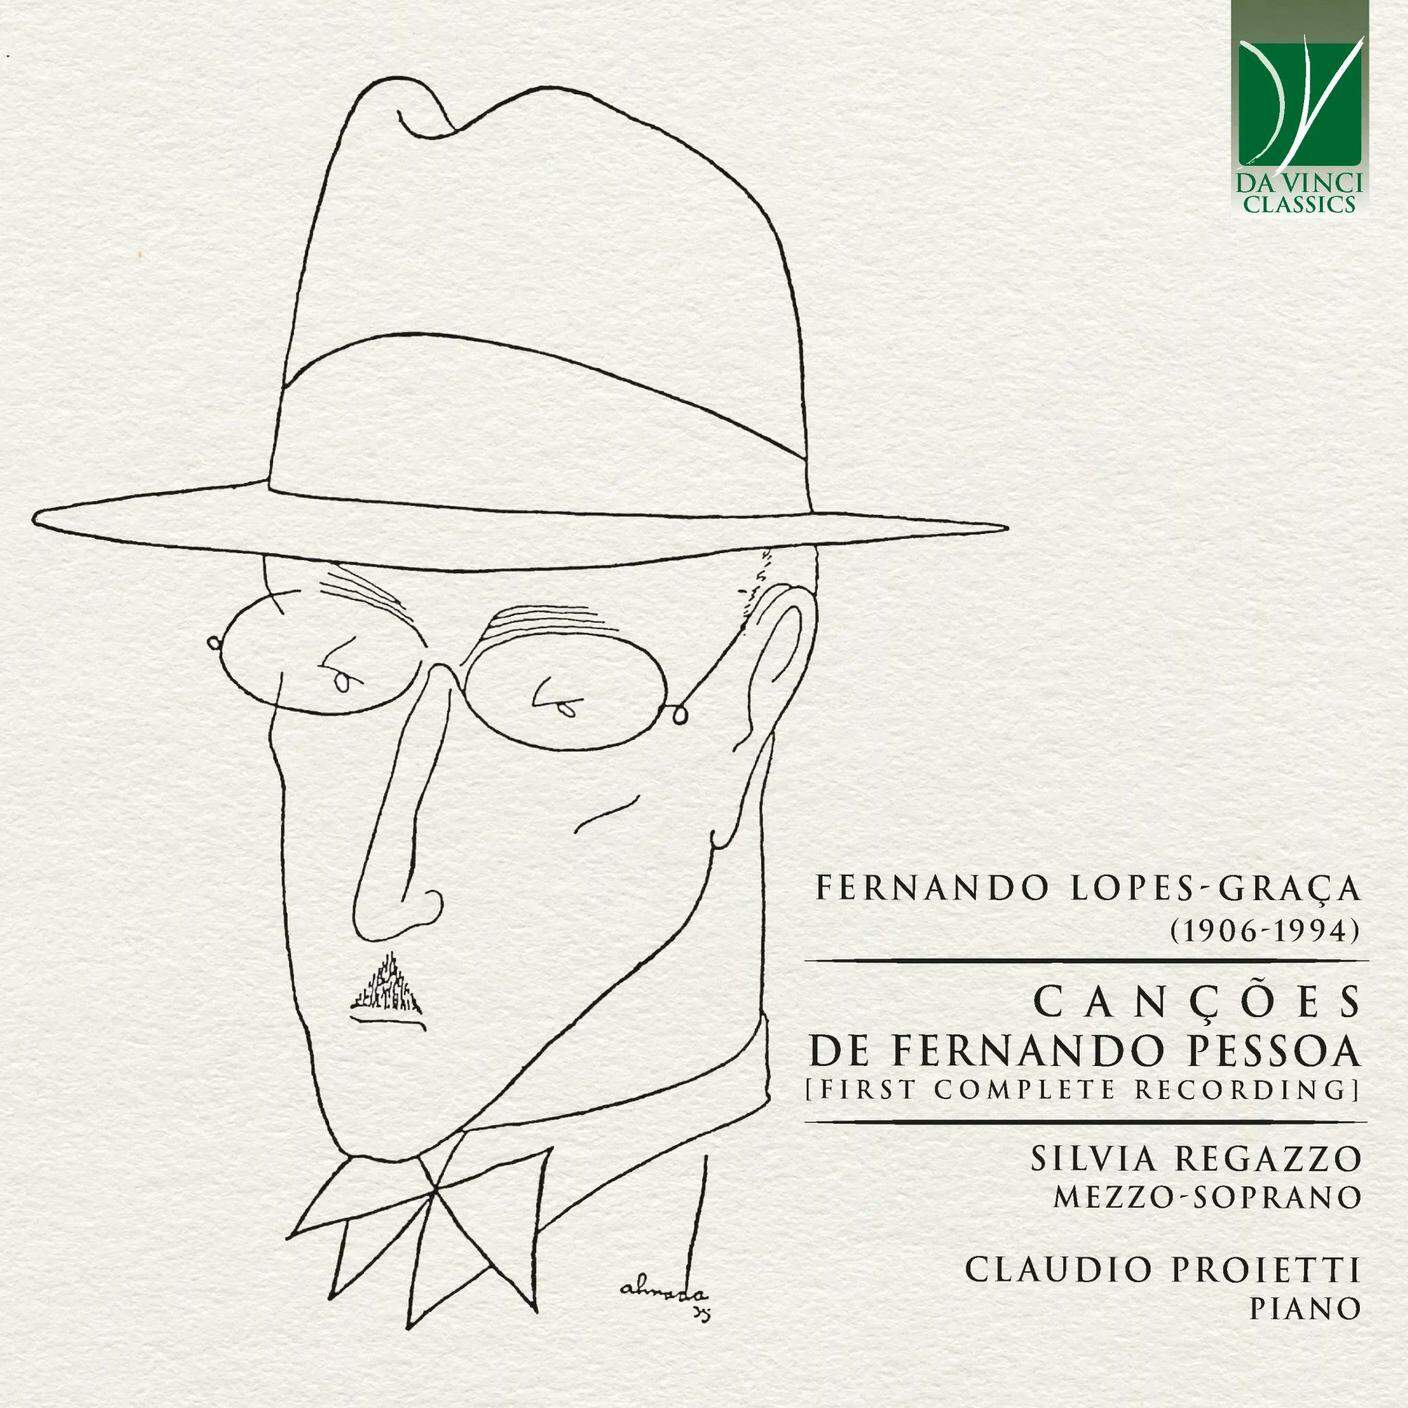 "Cancoes de Fernando Pessoa, prima registrazione completa di Fernando Lopes-Graca" di Silvia Regazzo e Claudio Proietti, Da Vinci Classics (dettaglio di copertina)